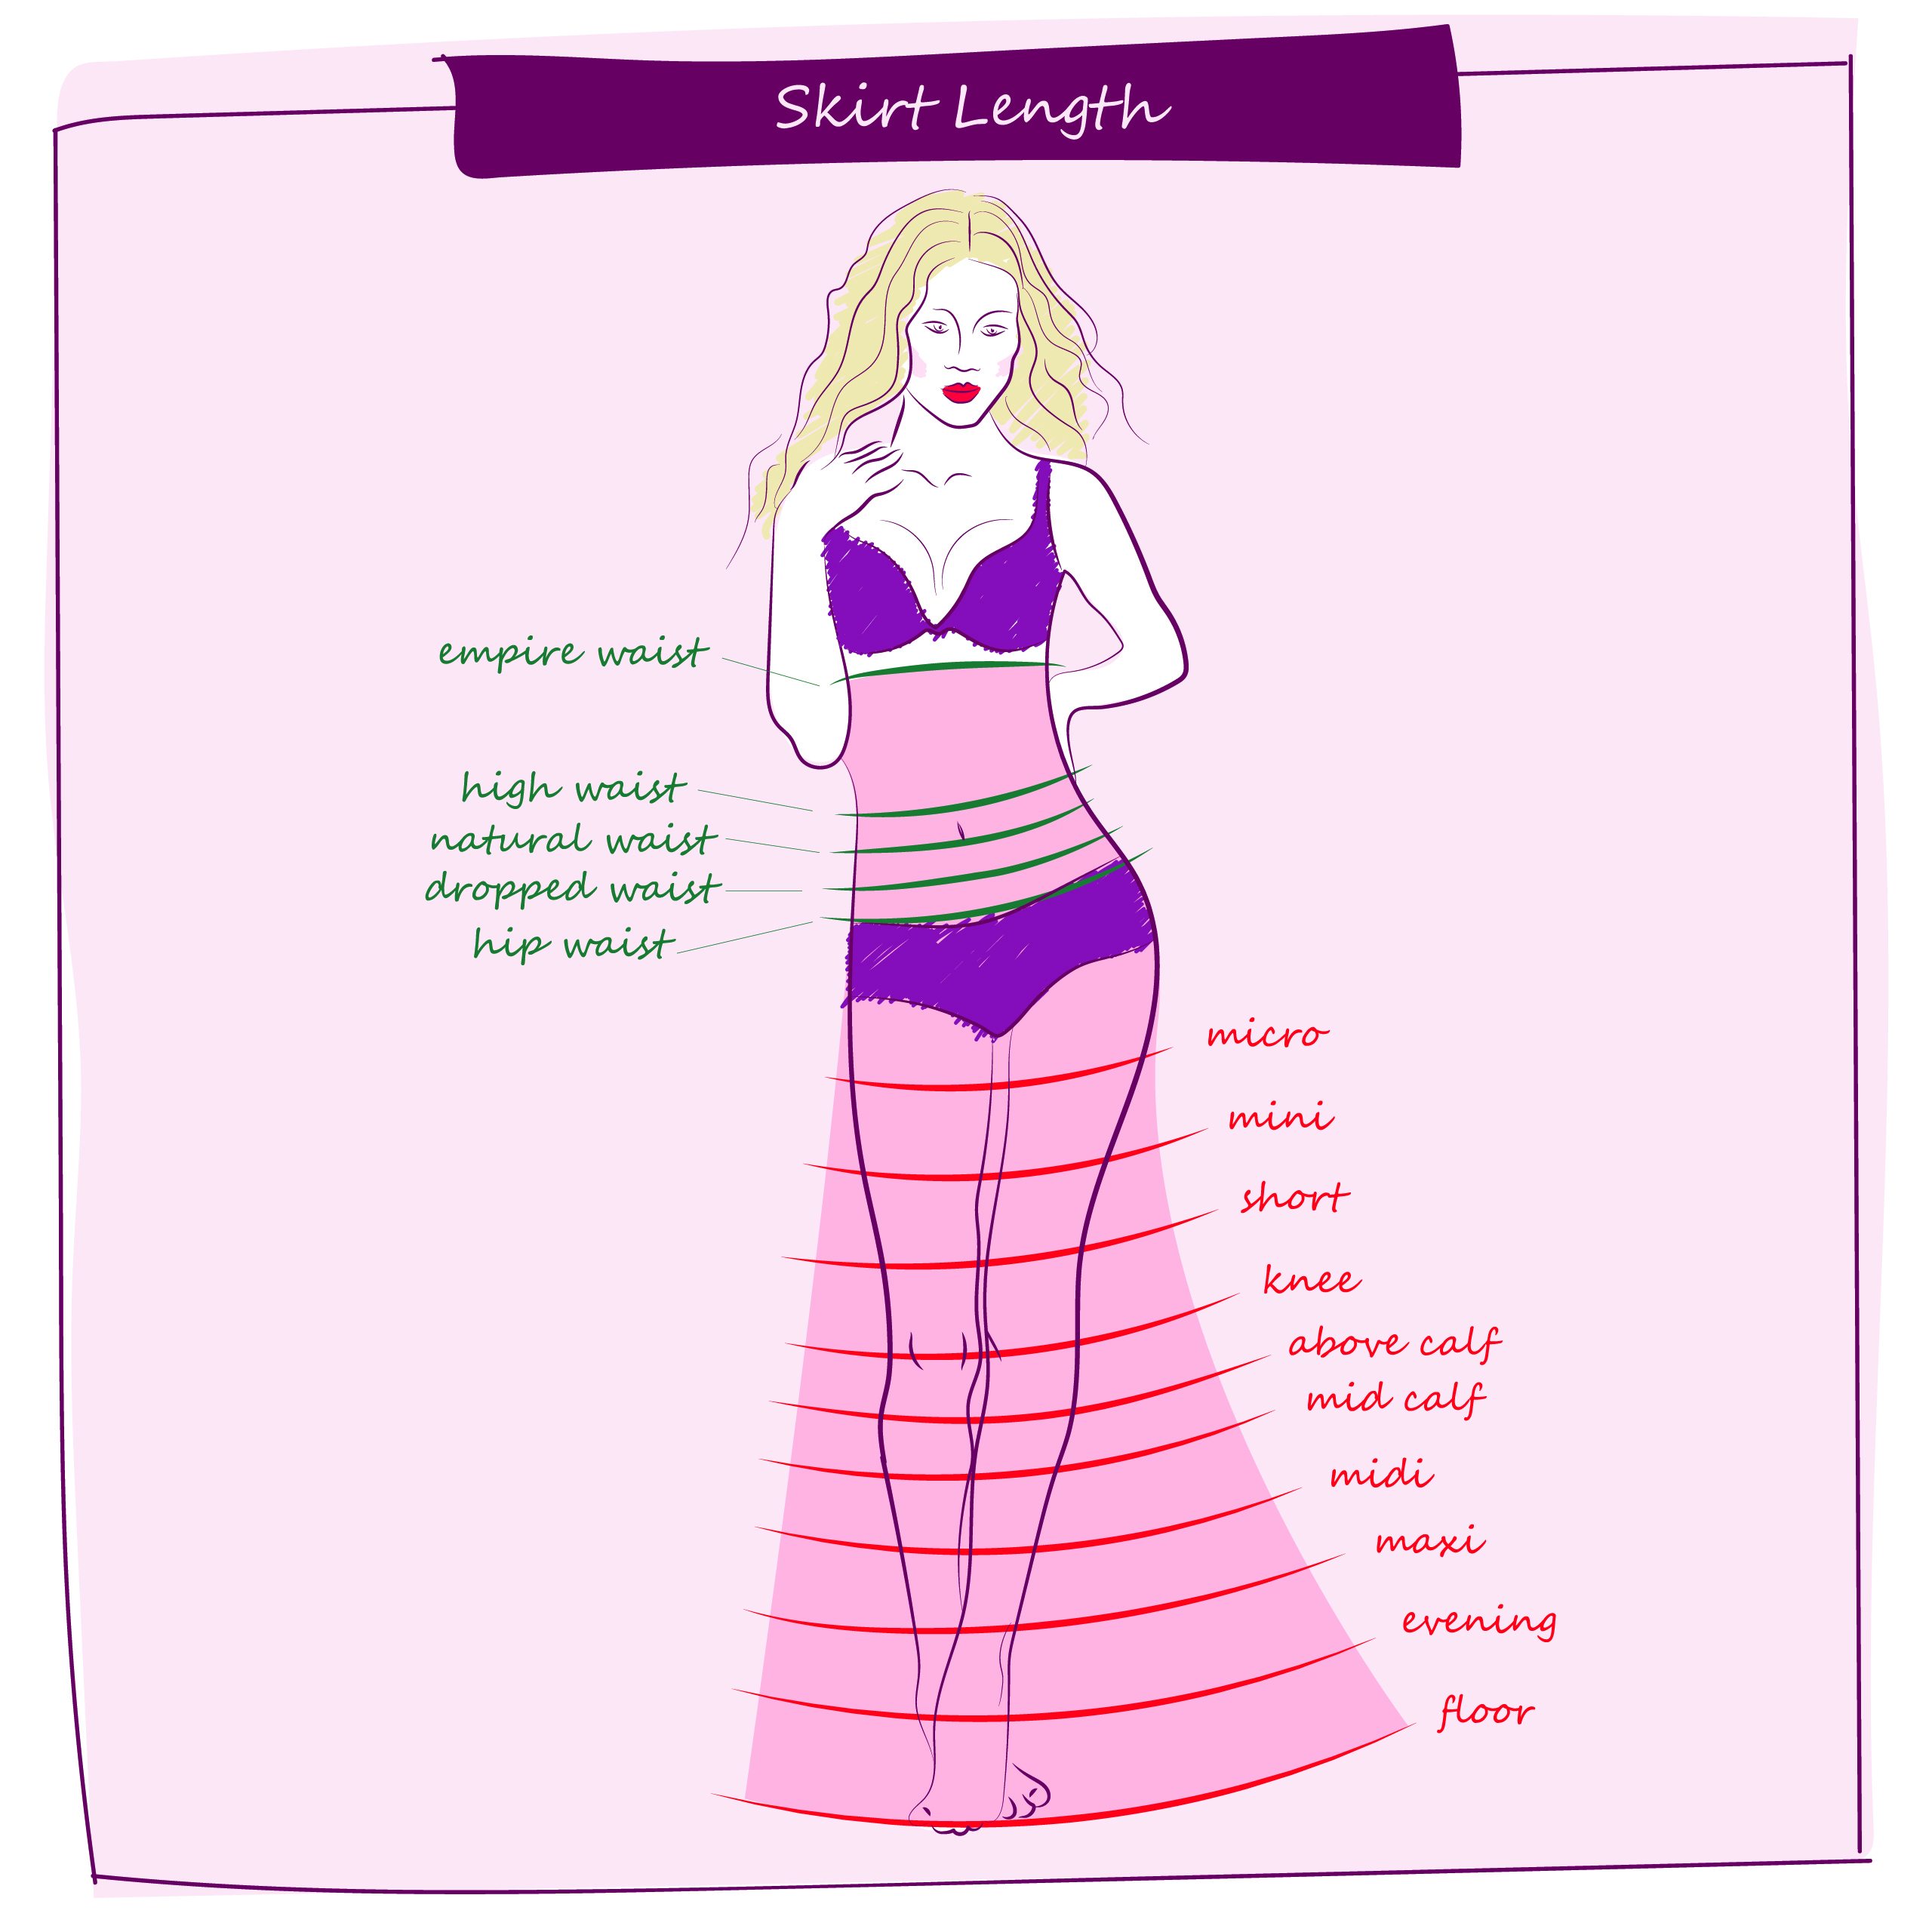 Types of skirt lengths